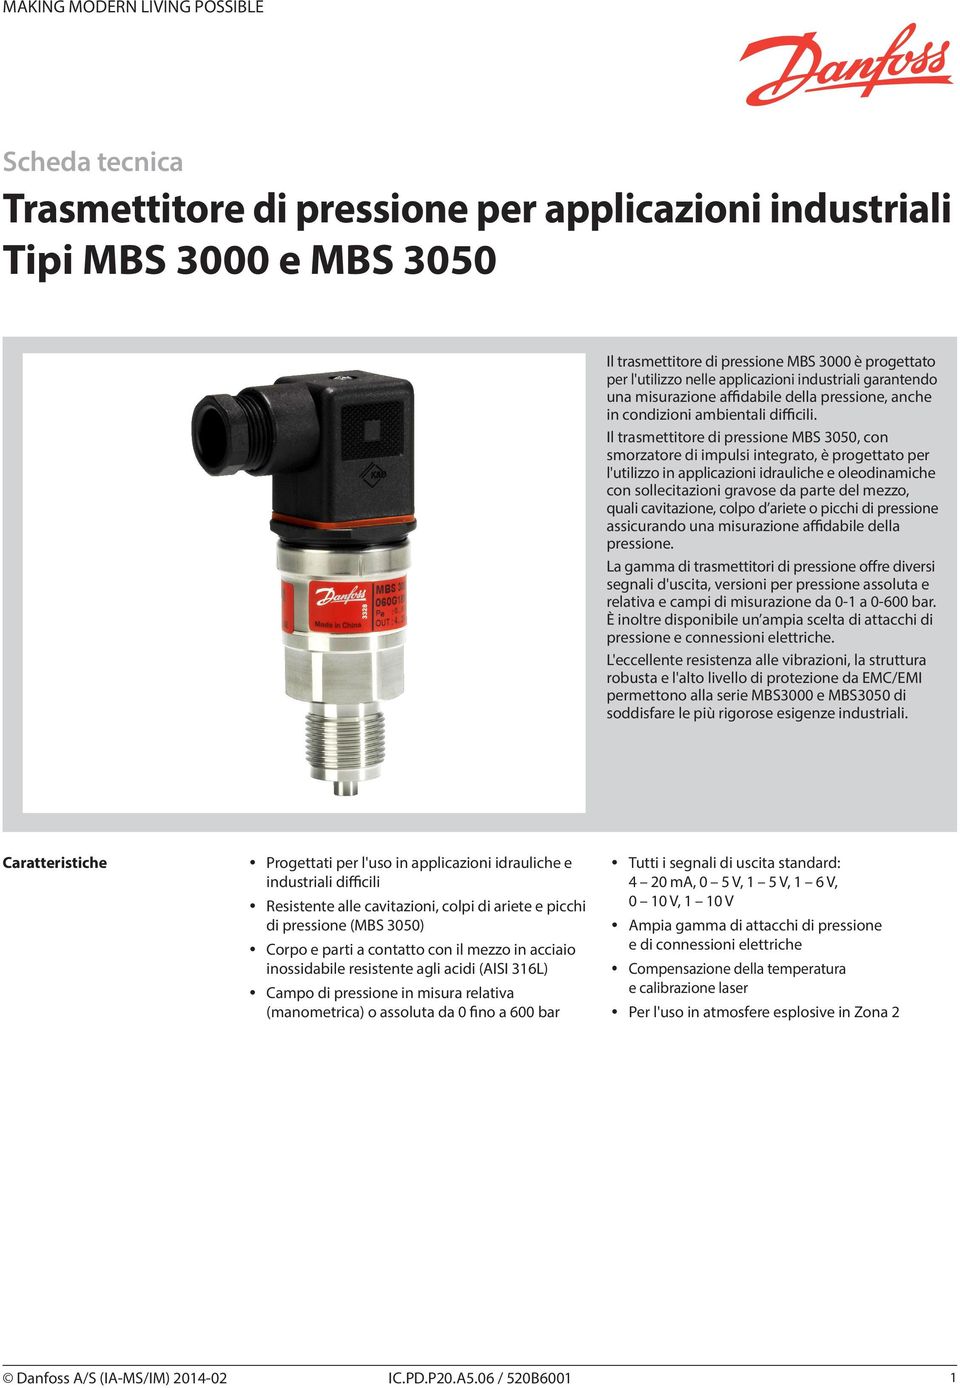 Il trasmettitore di pressione MBS 3050, con smorzatore di impulsi integrato, è progettato per l'utilizzo in applicazioni idrauliche e oleodinamiche con sollecitazioni gravose da parte del mezzo,